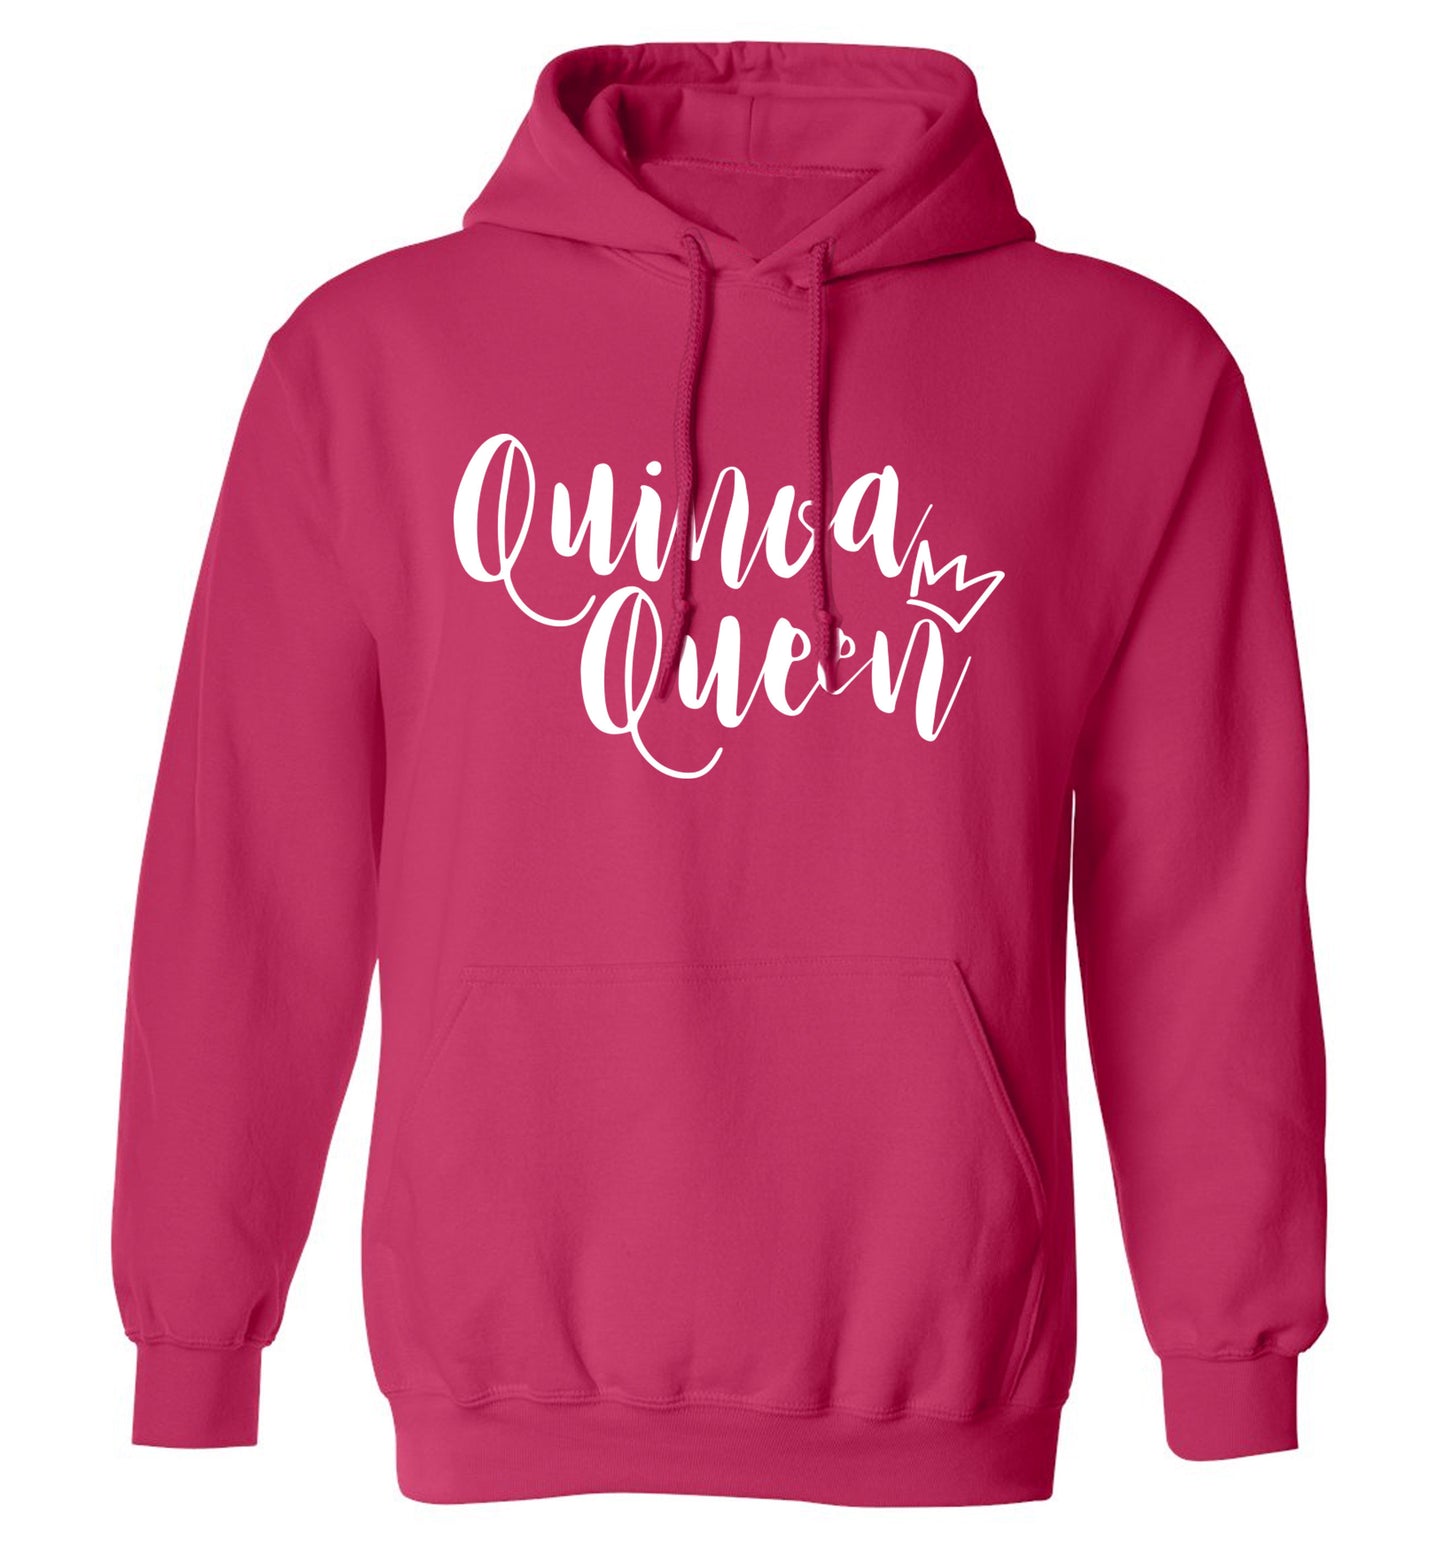 Quinoa Queen adults unisex pink hoodie 2XL